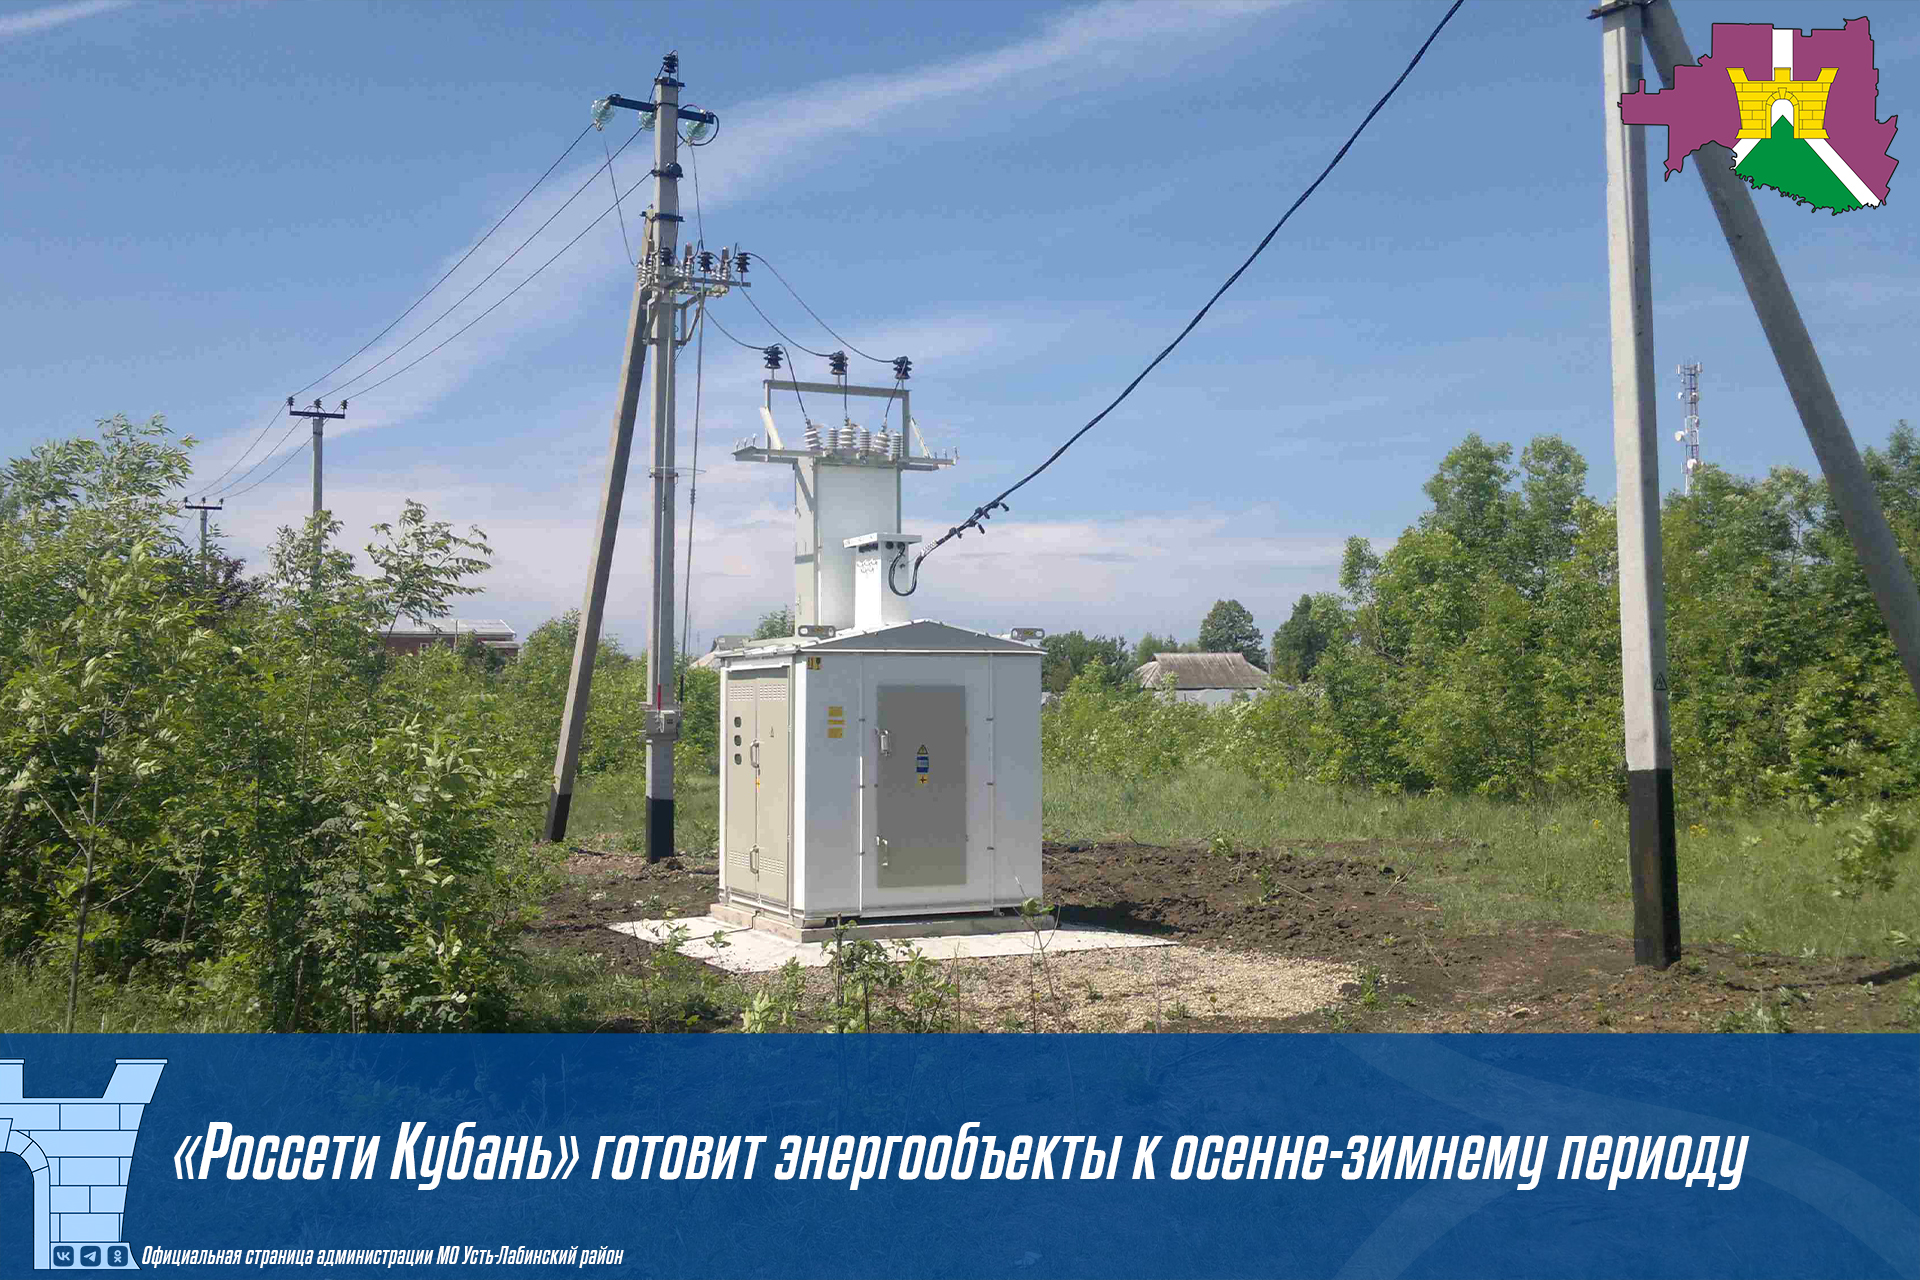 «Россети Кубань» готовит энергообъекты к осенне-зимнему периоду в Усть-Лабинском районе